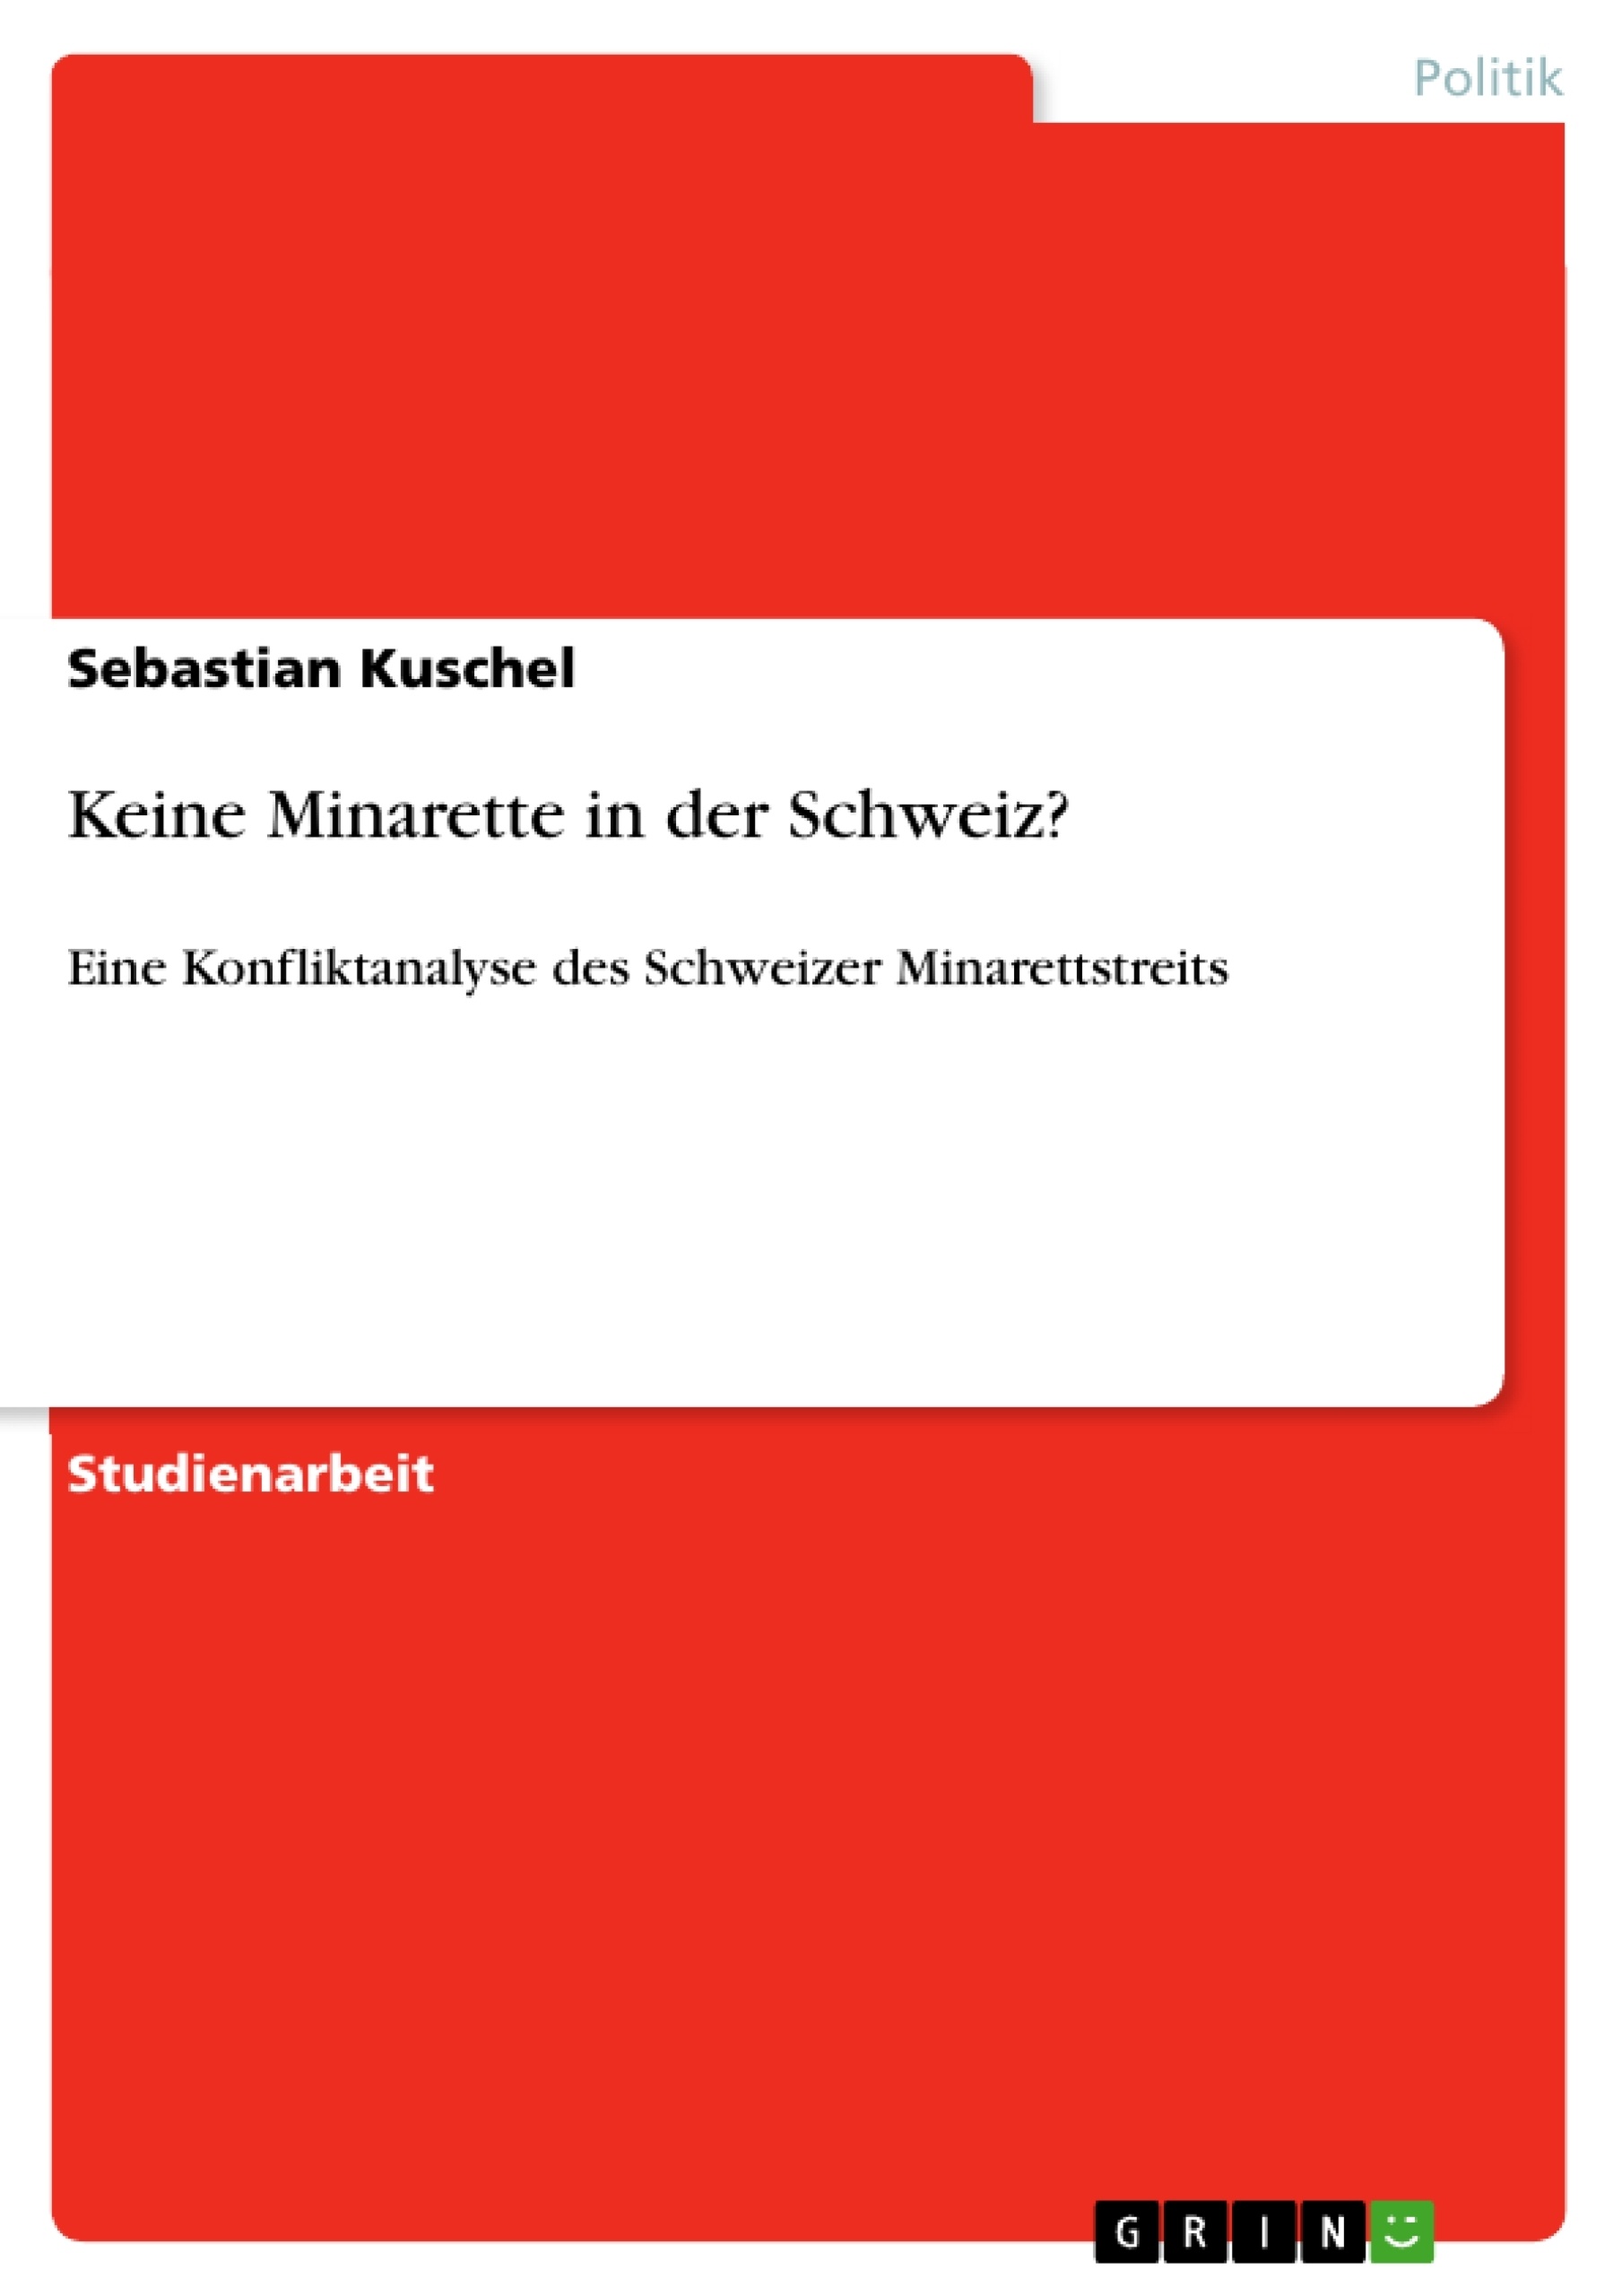 Título: Keine Minarette in der Schweiz?